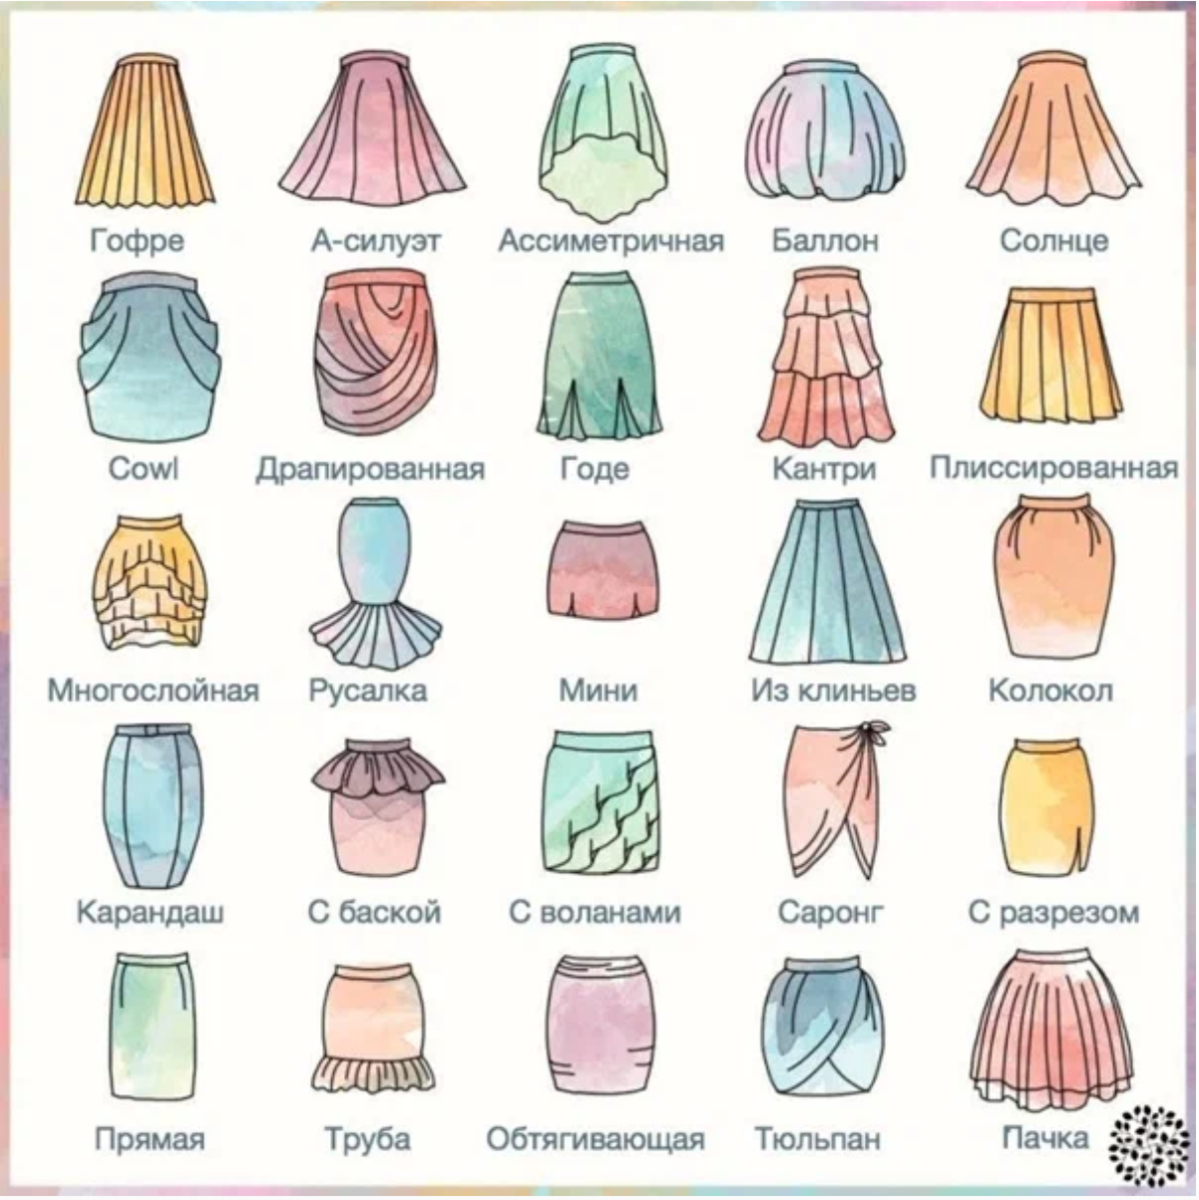 Покрой какие бывают. Разные виды юбок. Виды юбок и их названия. Фасоны юбок и названия. Модели юбок названия.